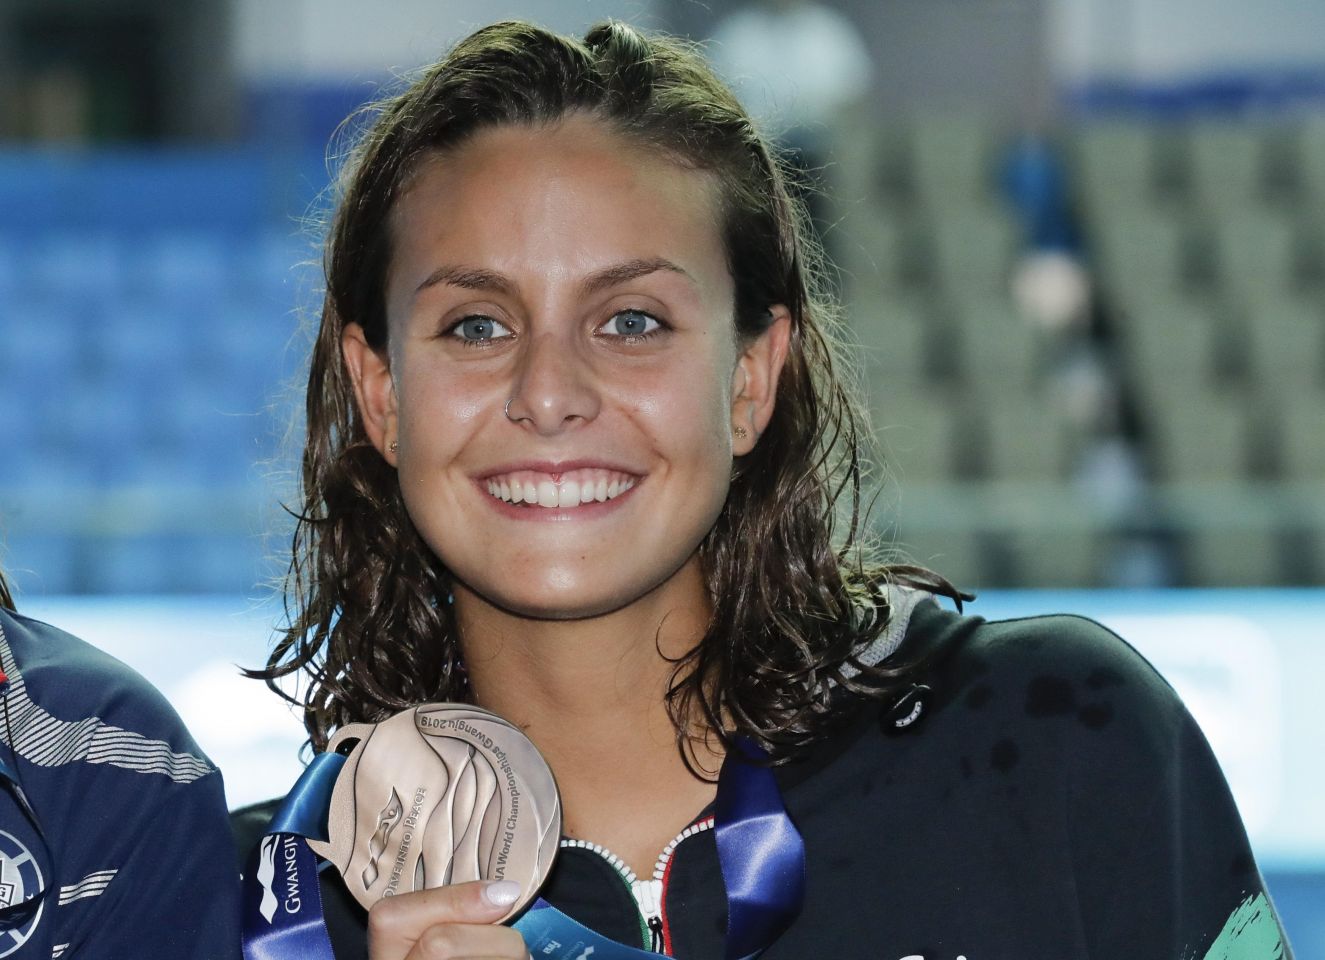 Nuoto, la genovese Martina Carraro medaglia d'oro agli Europei